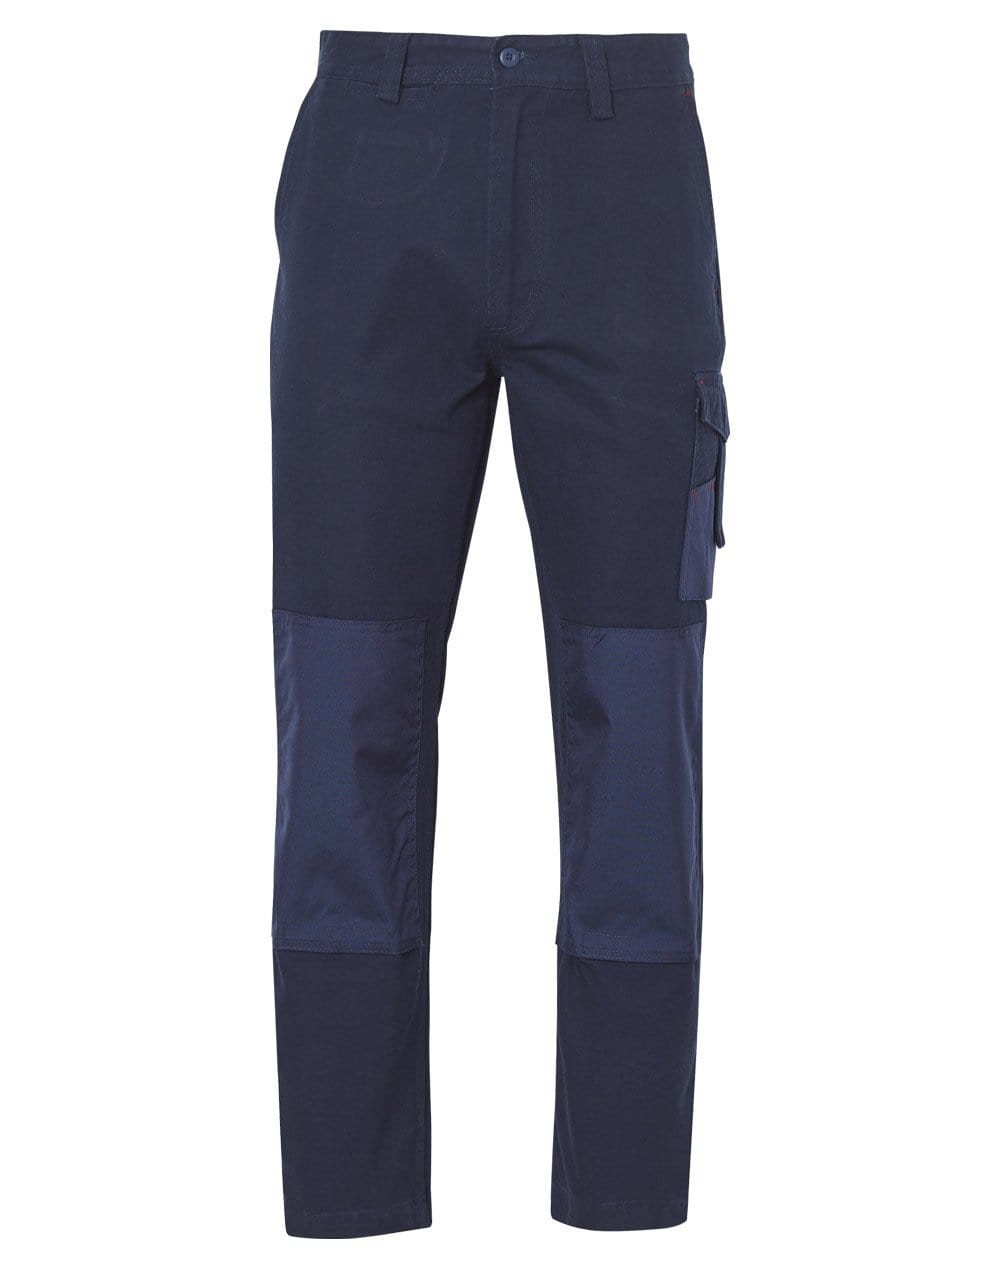 Cordura Durable Work Pants Stout Size WP17 Work Wear Australian Industrial Wear 87S Navy 